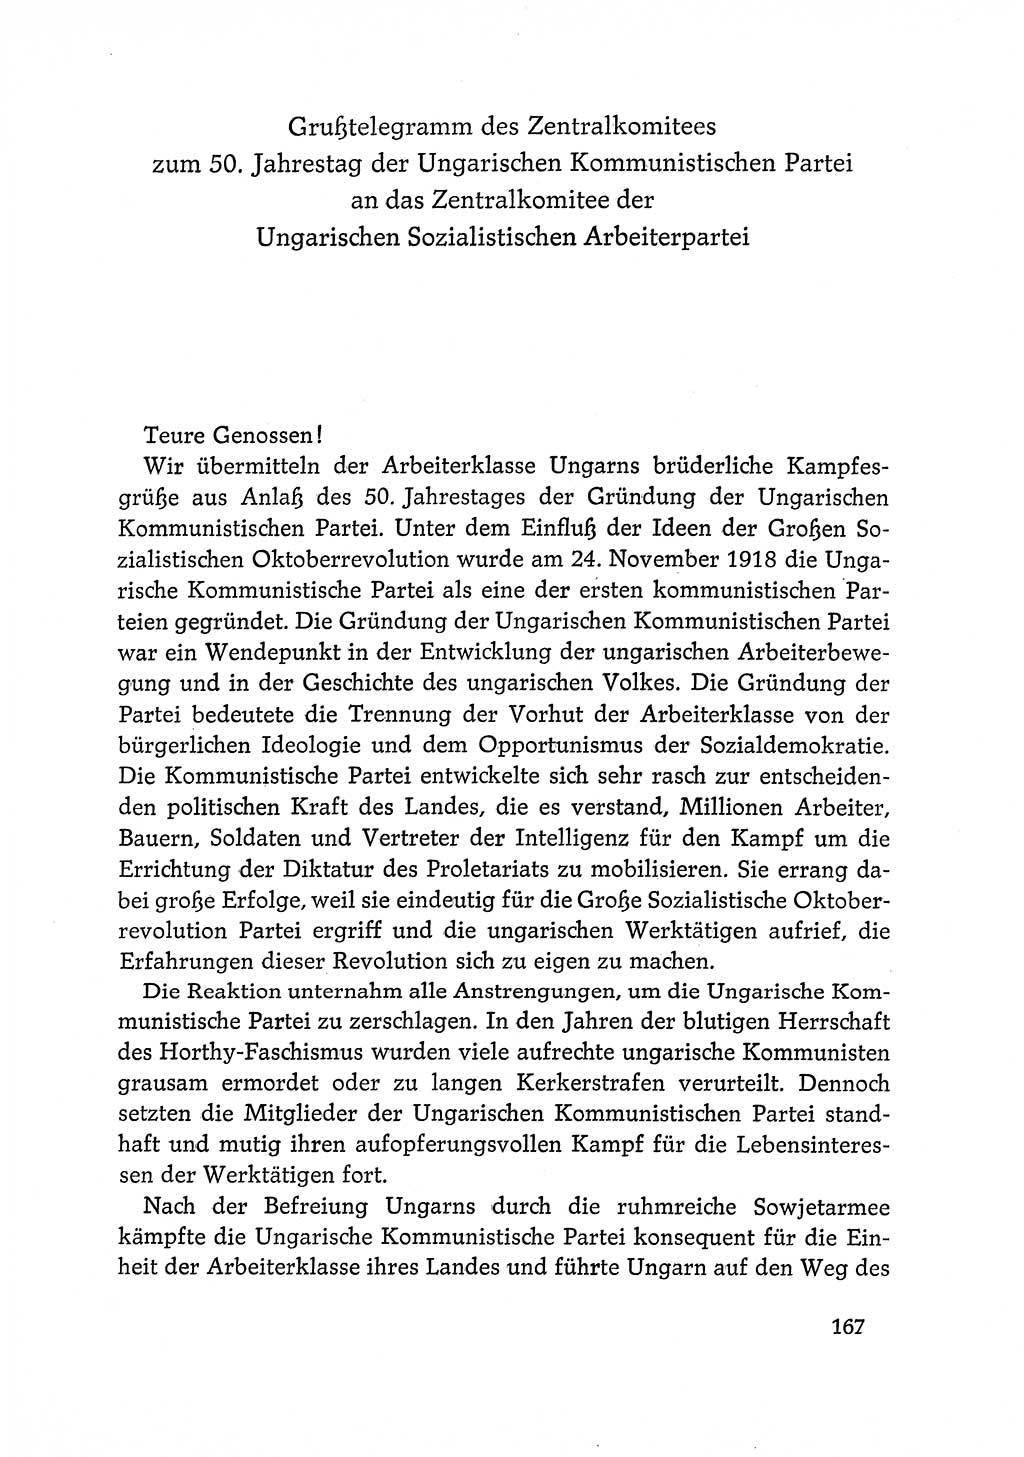 Dokumente der Sozialistischen Einheitspartei Deutschlands (SED) [Deutsche Demokratische Republik (DDR)] 1968-1969, Seite 167 (Dok. SED DDR 1968-1969, S. 167)